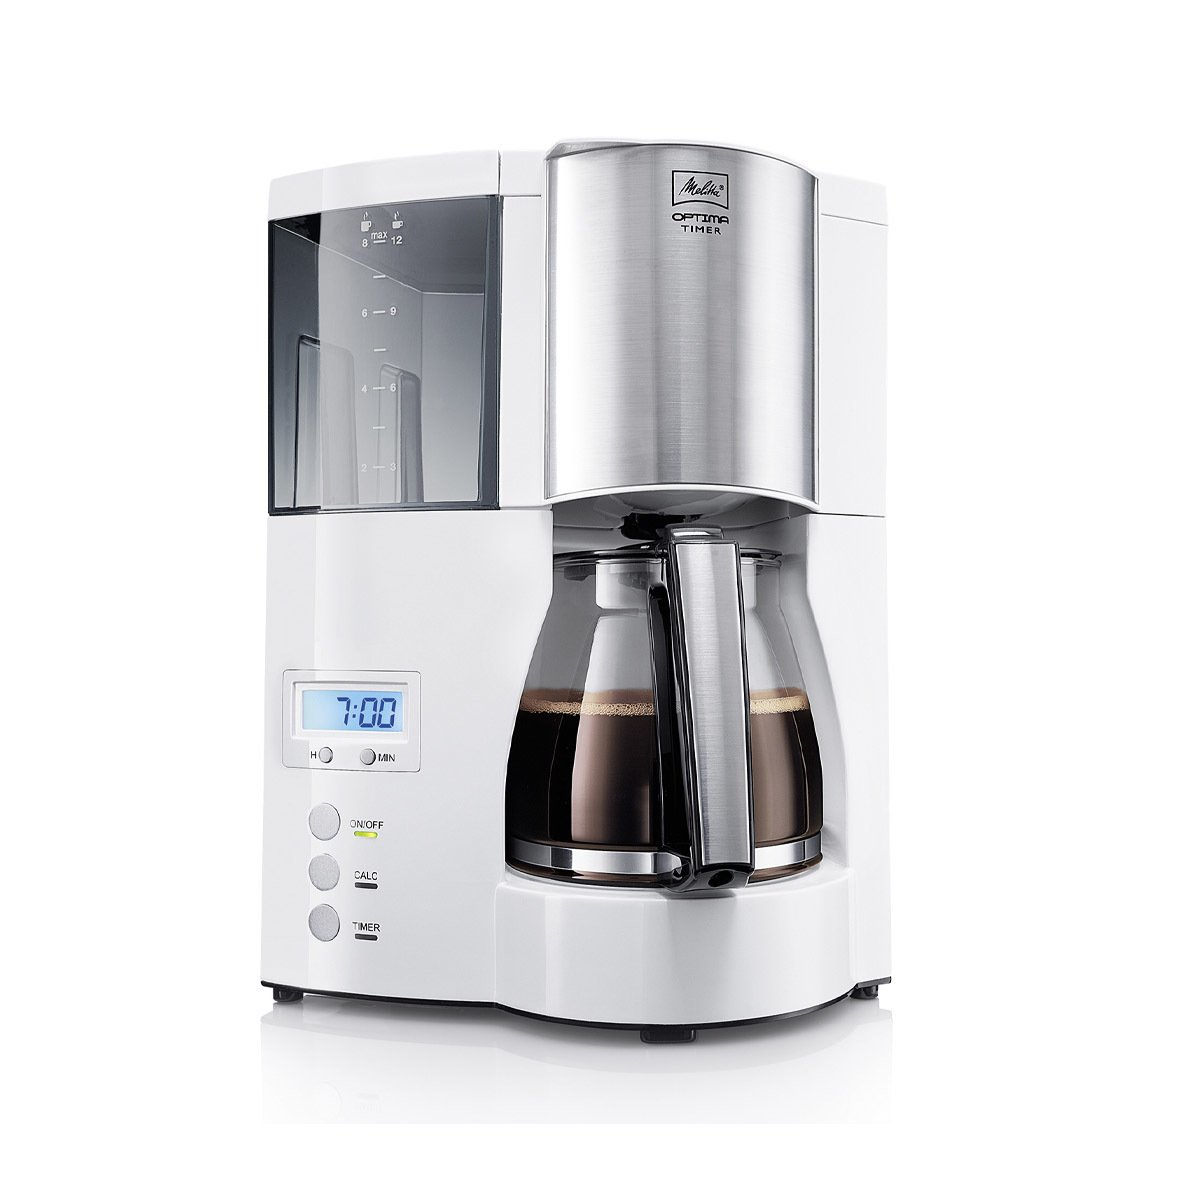 Melitta Optima Timer Zaman Ayarlı Filtre Kahve Makinesi Beyaz